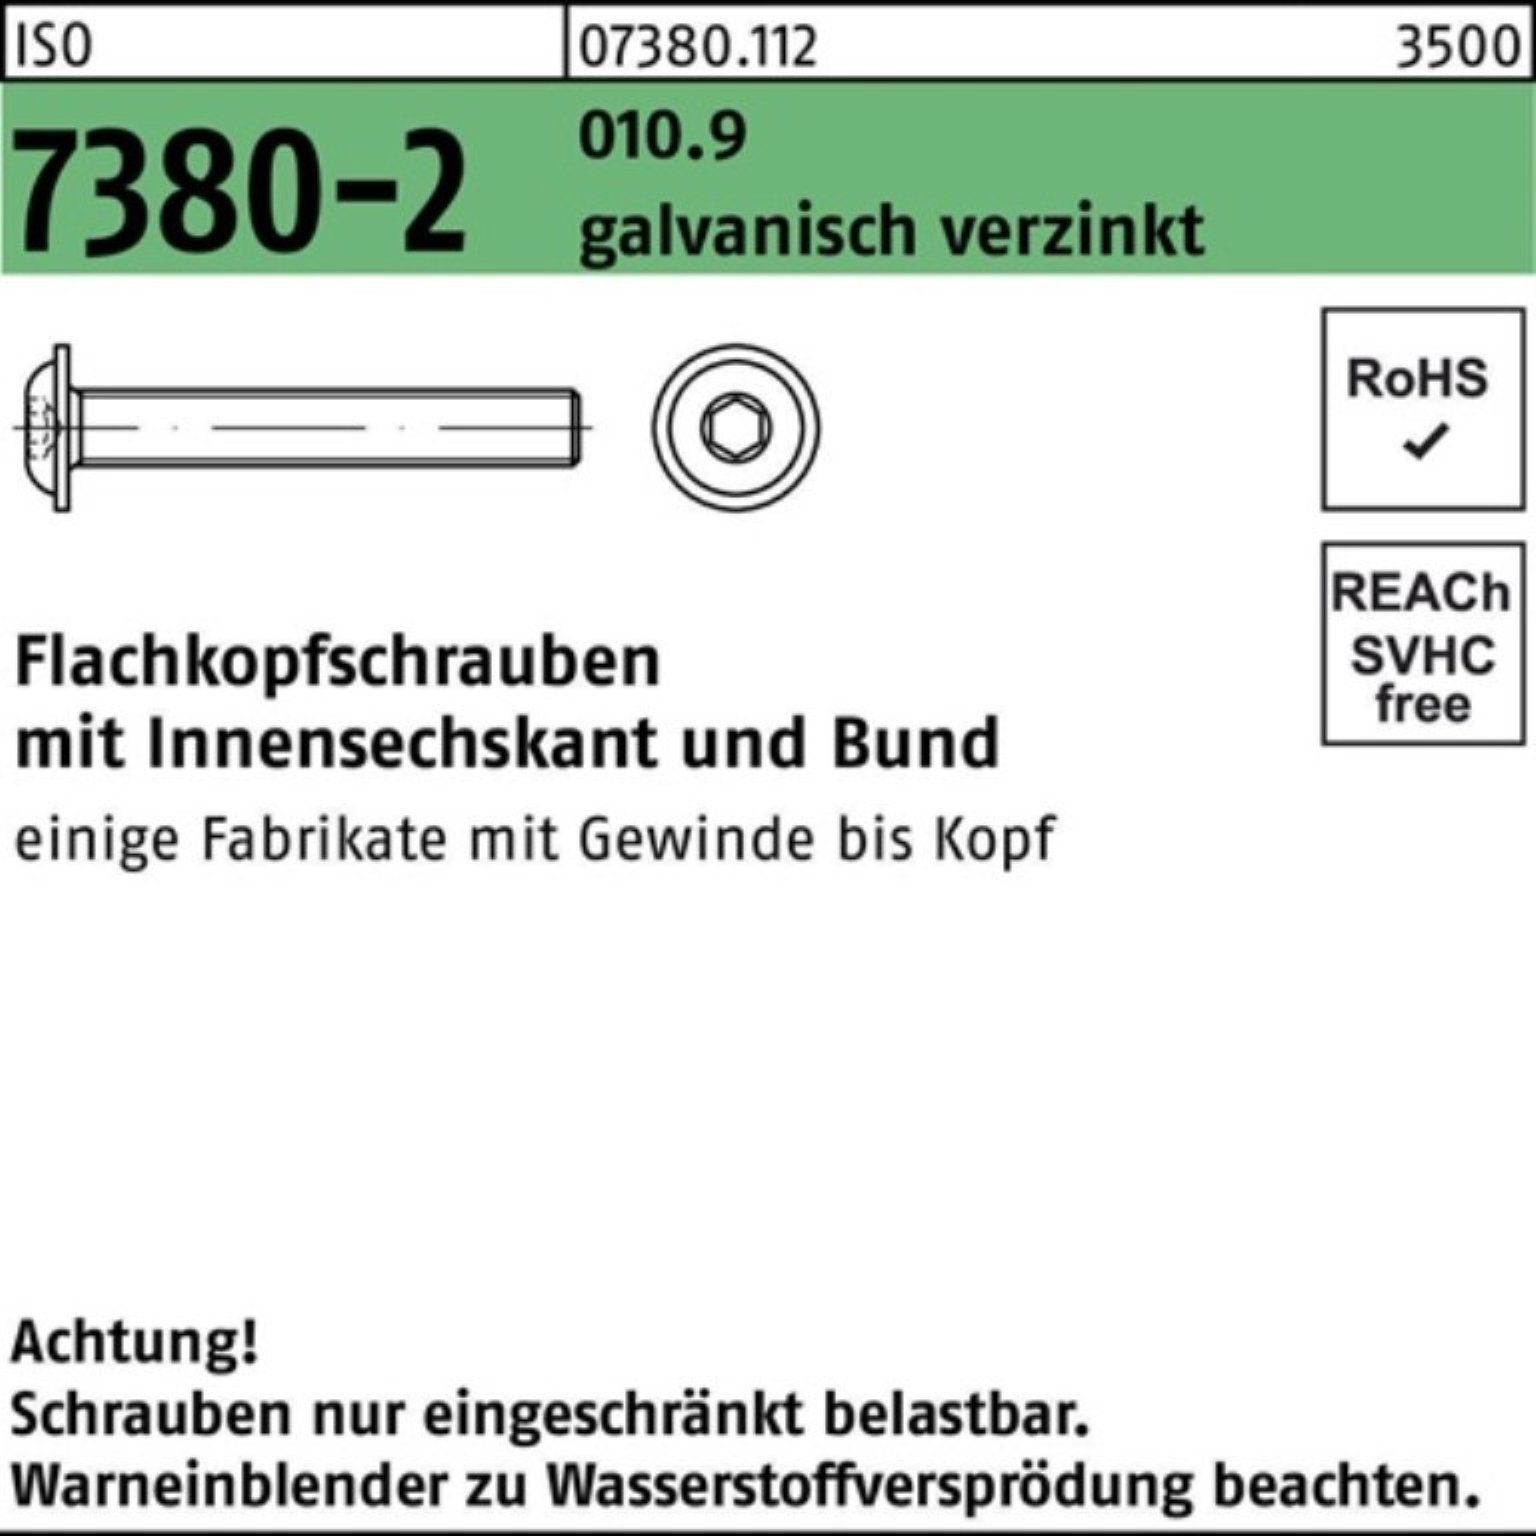 Reyher Schraube Bund/Innen-6kt M12x25 7380-2 Pack ISO 100er ga Flachkopfschraube 010.9